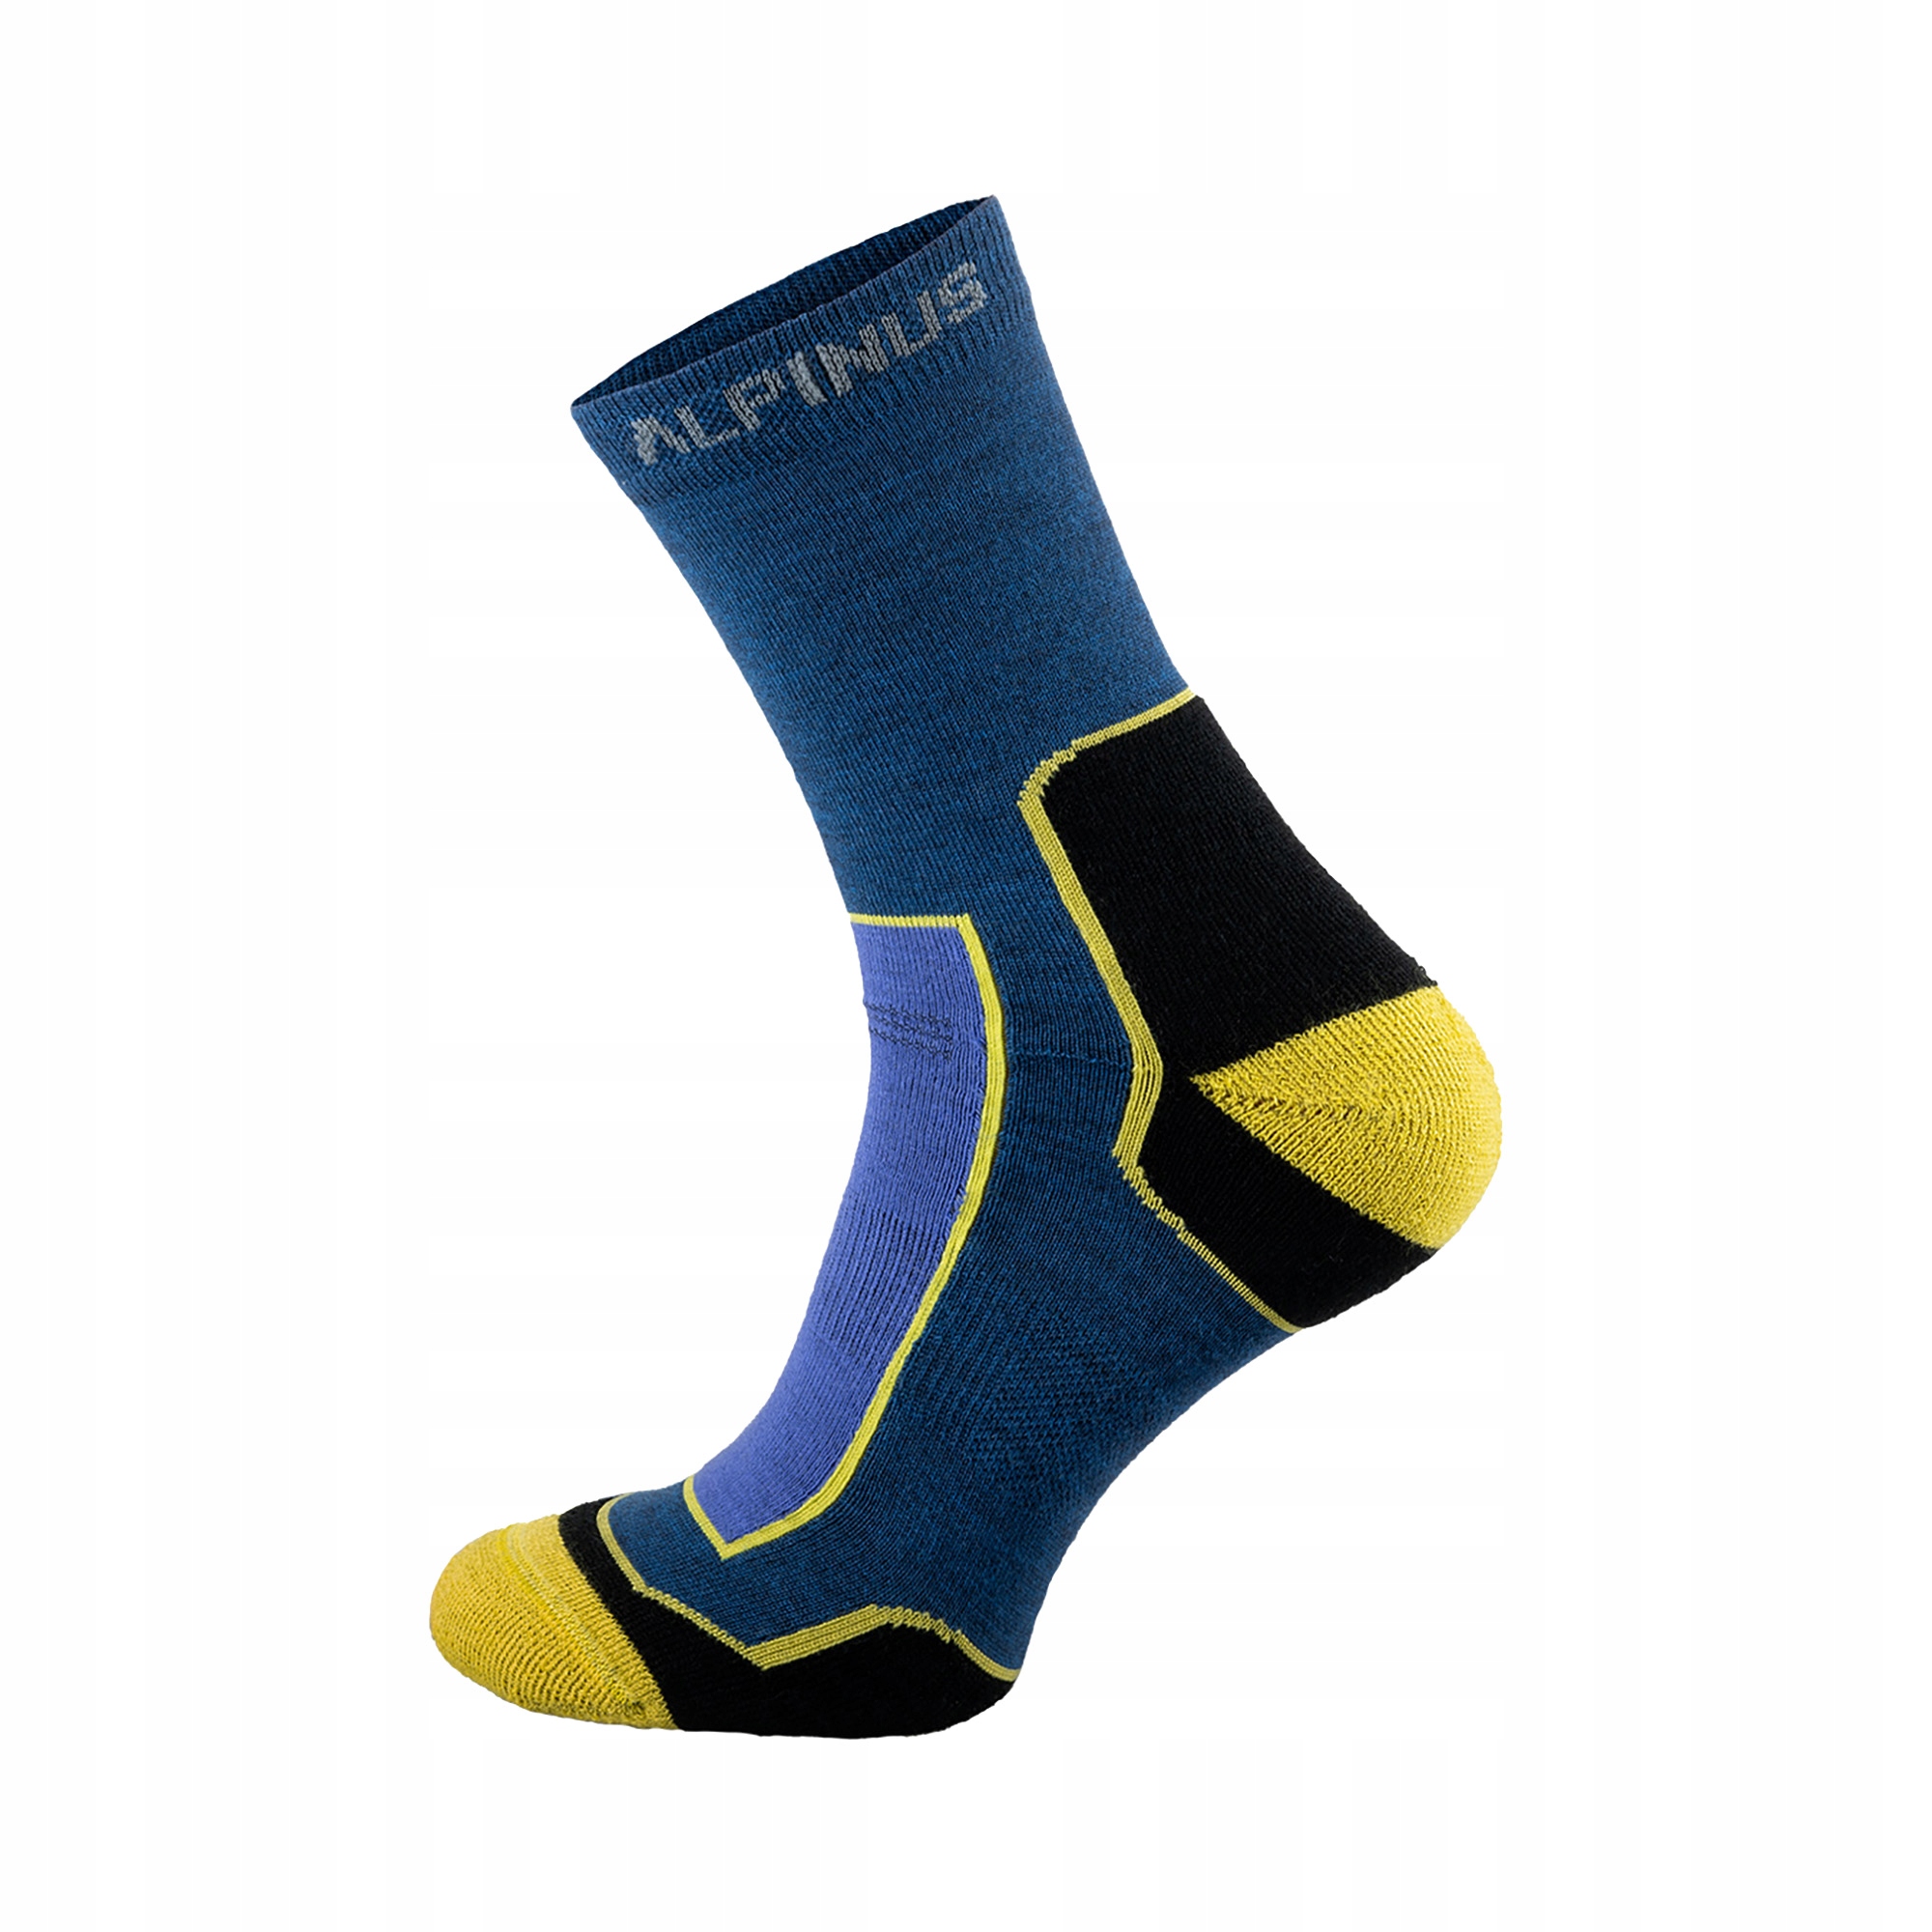 Trekingové ponožky Alpinus Sveg modré FI18445 43-46 EU